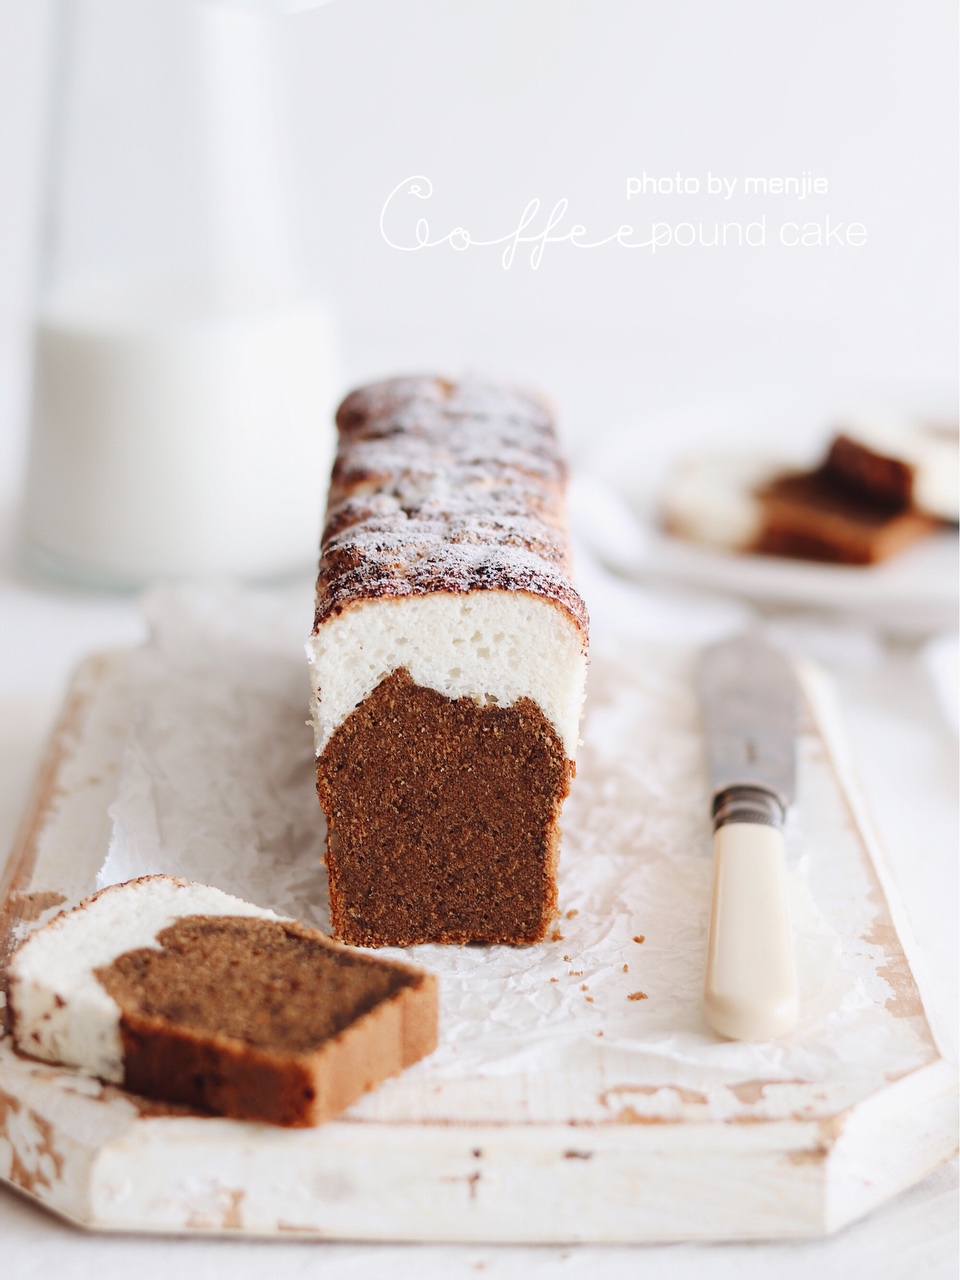 达克瓦兹雪顶✨焦糖咖啡磅蛋糕✔️下午茶甜品的做法